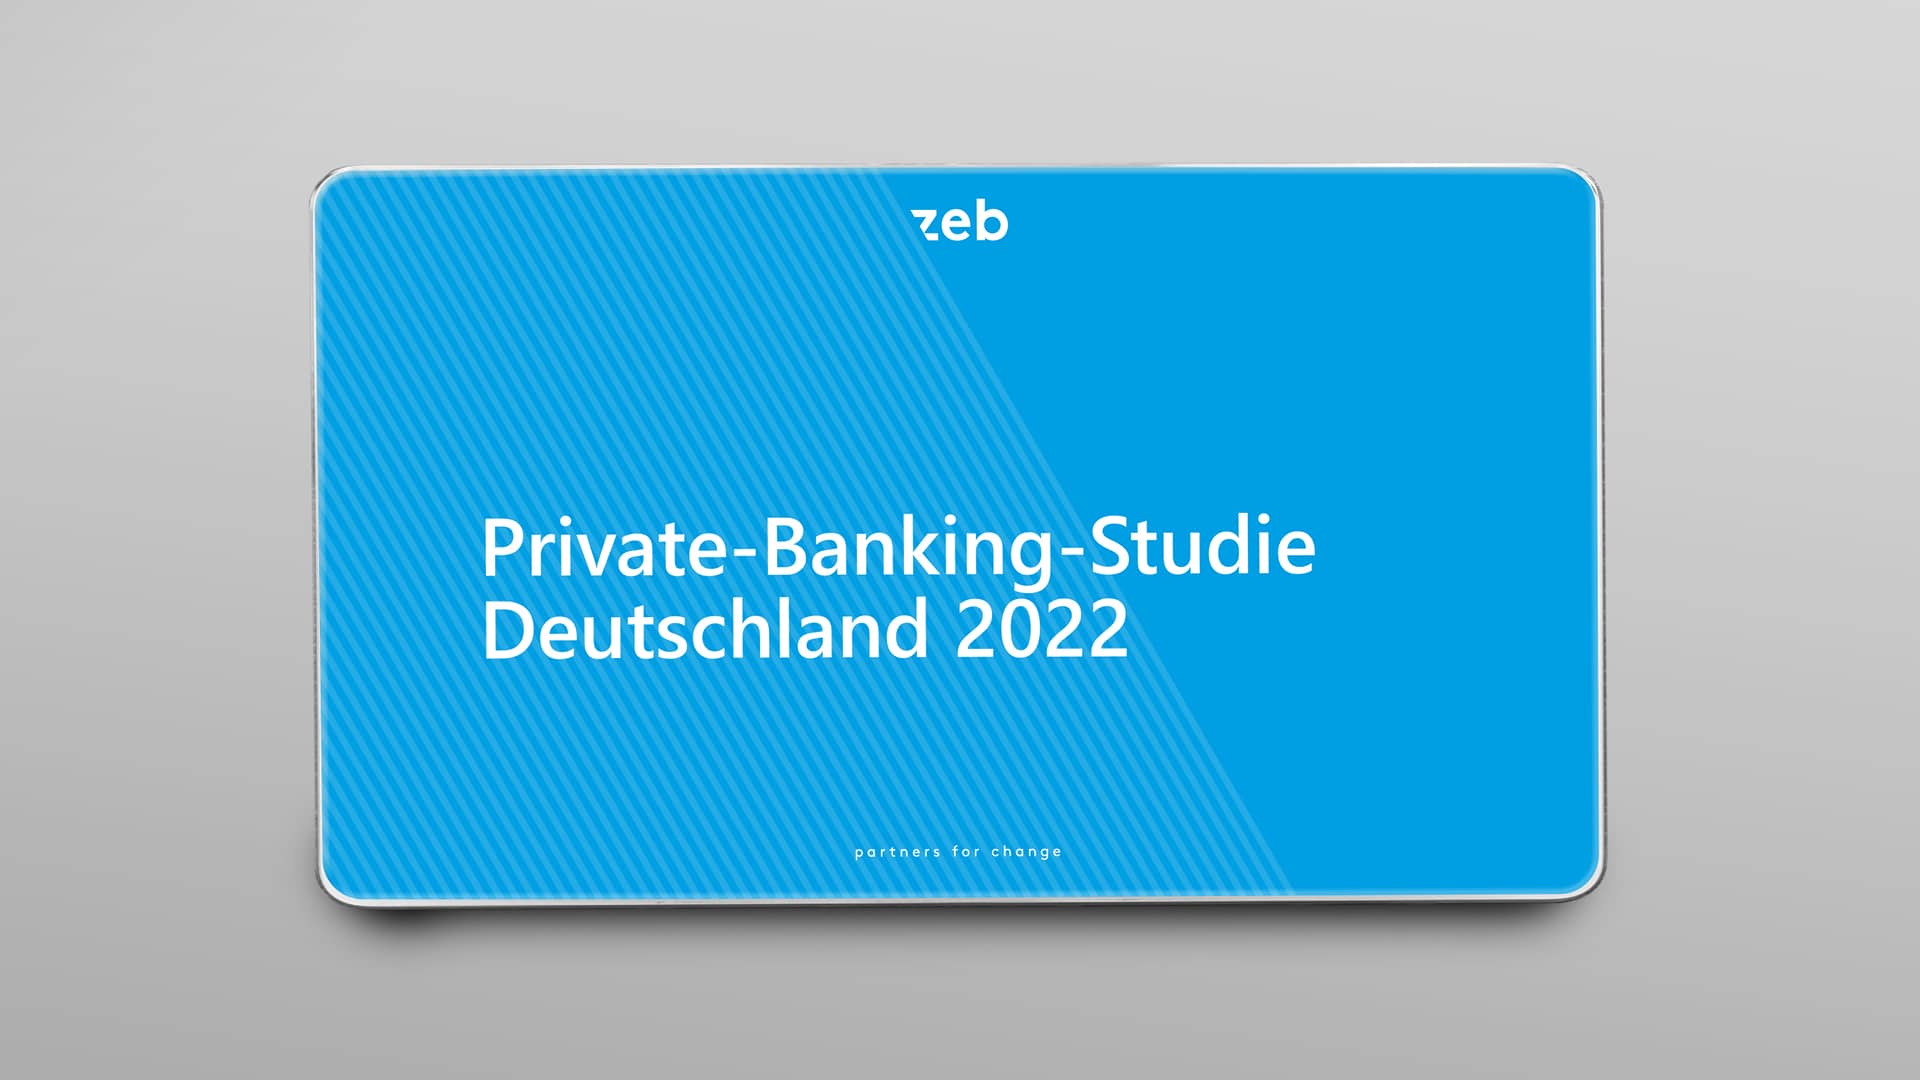 Private Banking Studie 2022: Deutschland